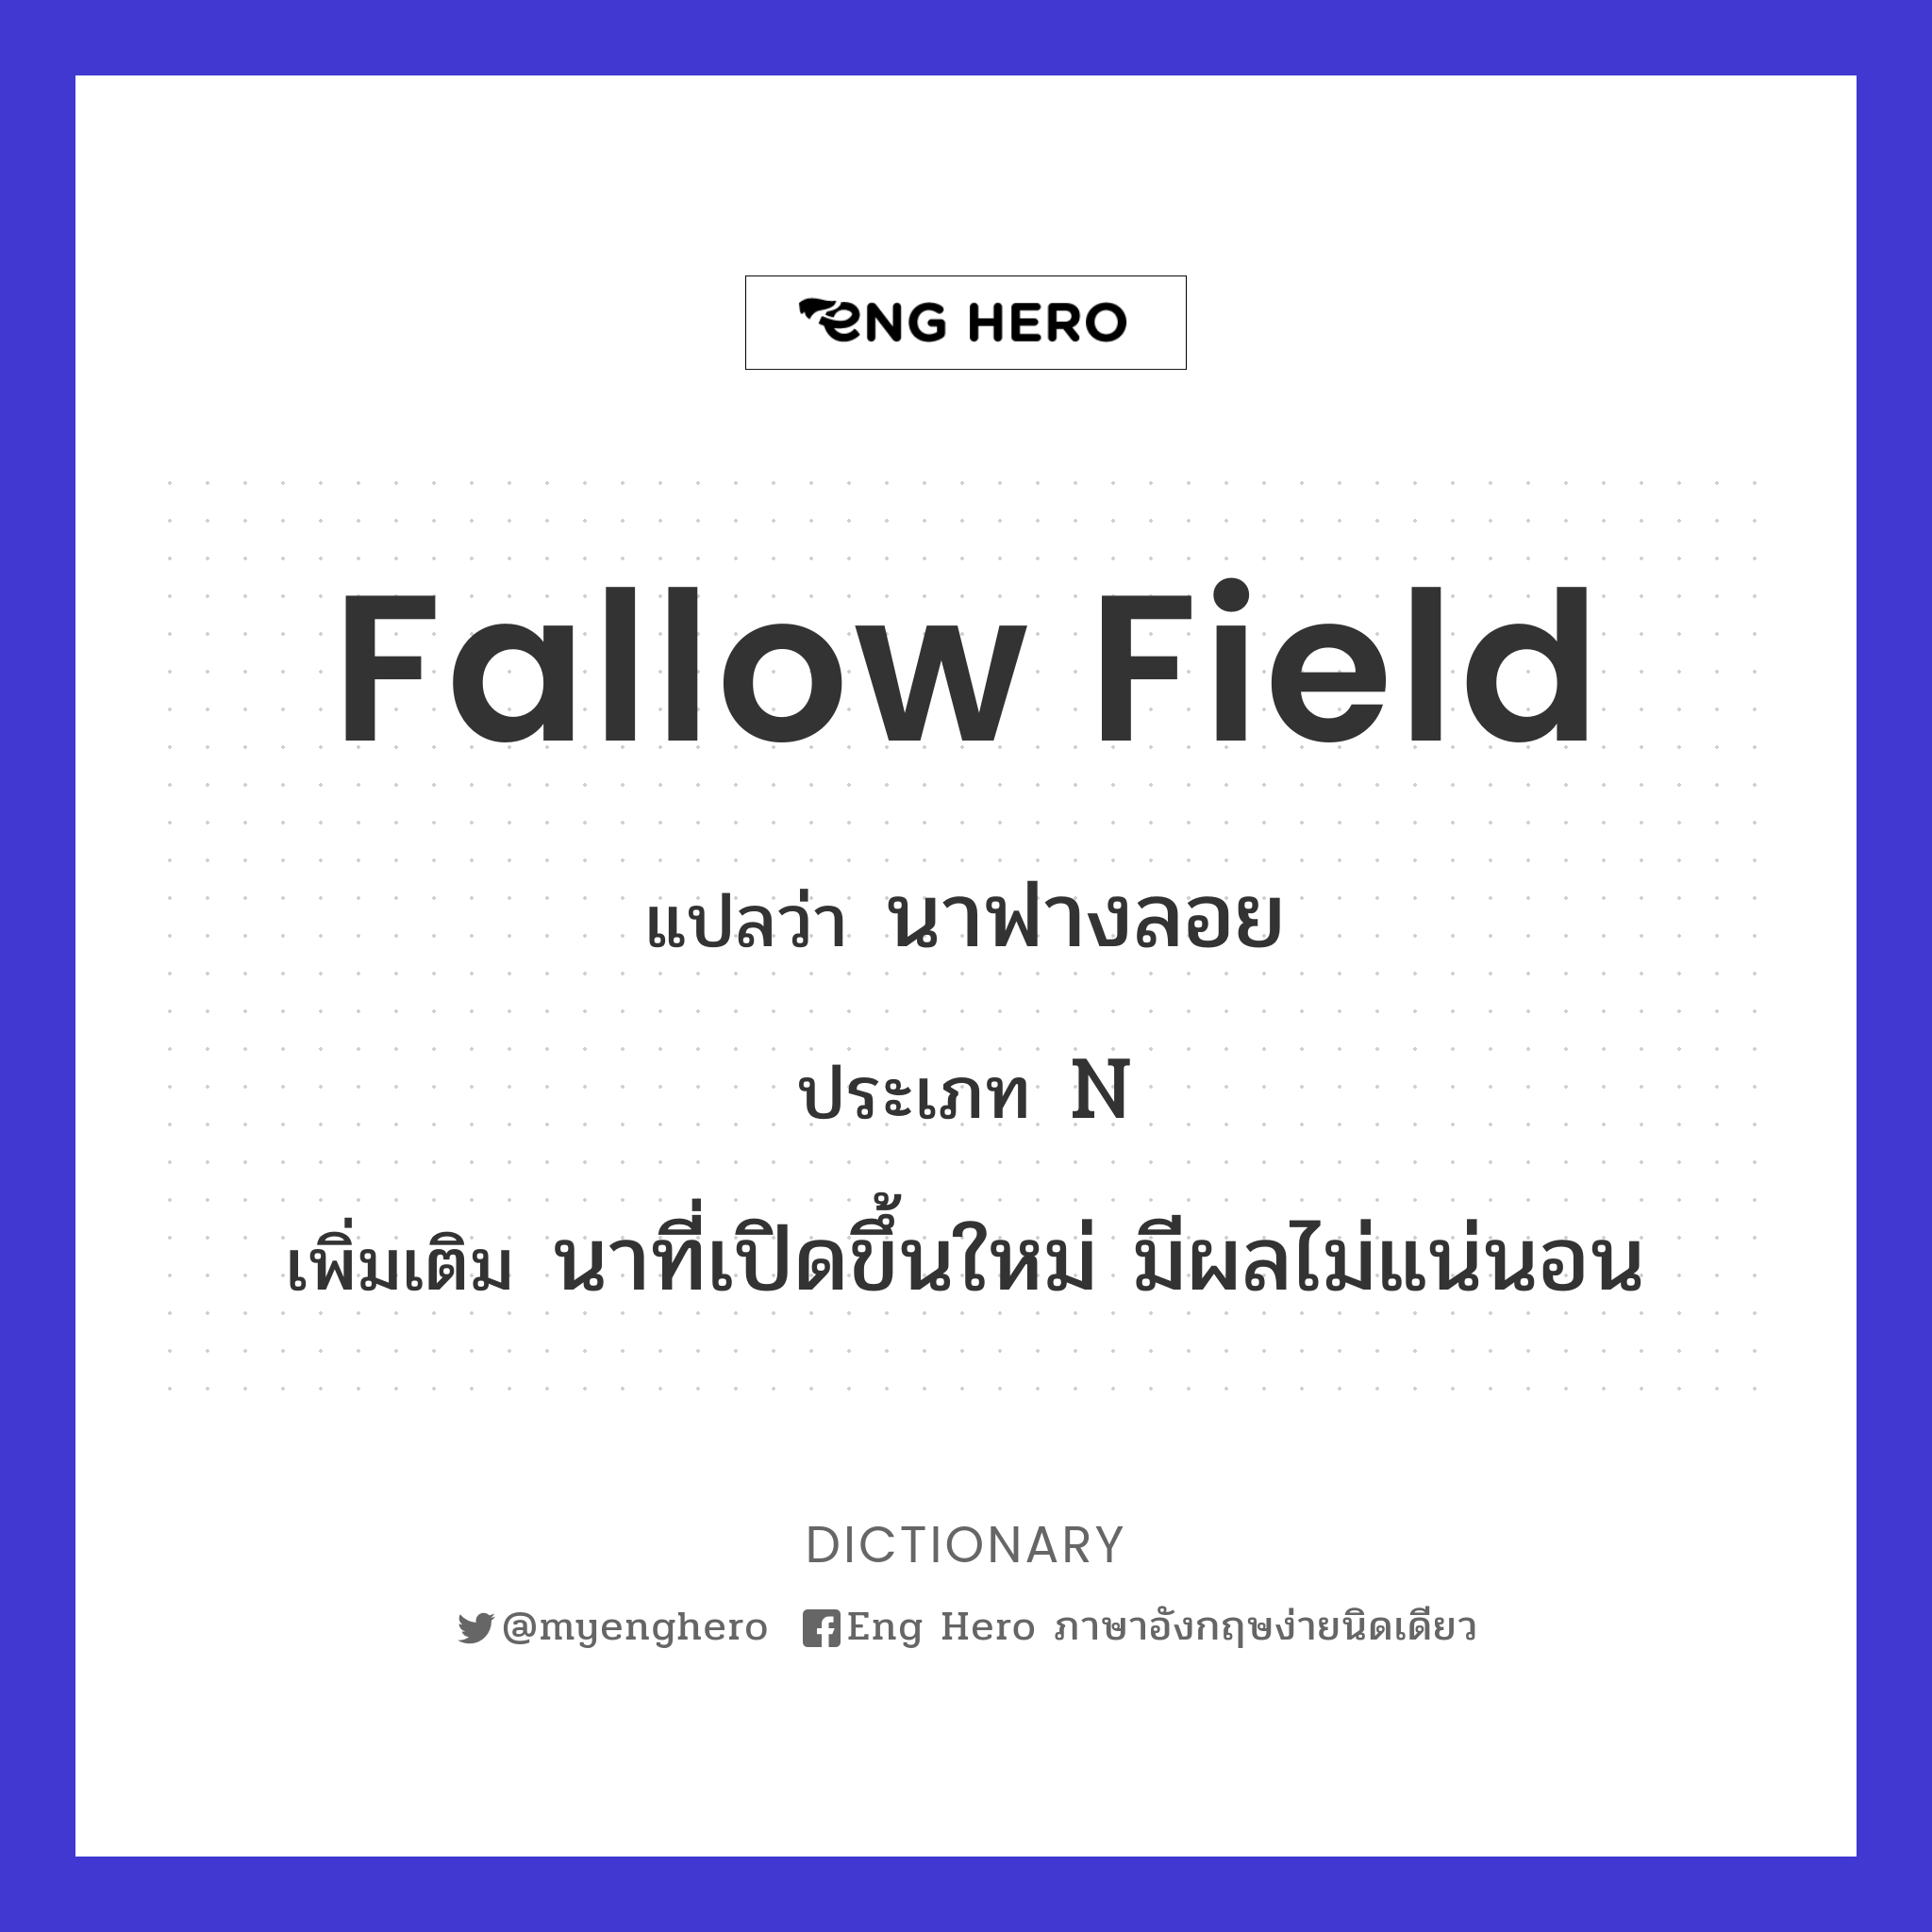 fallow field